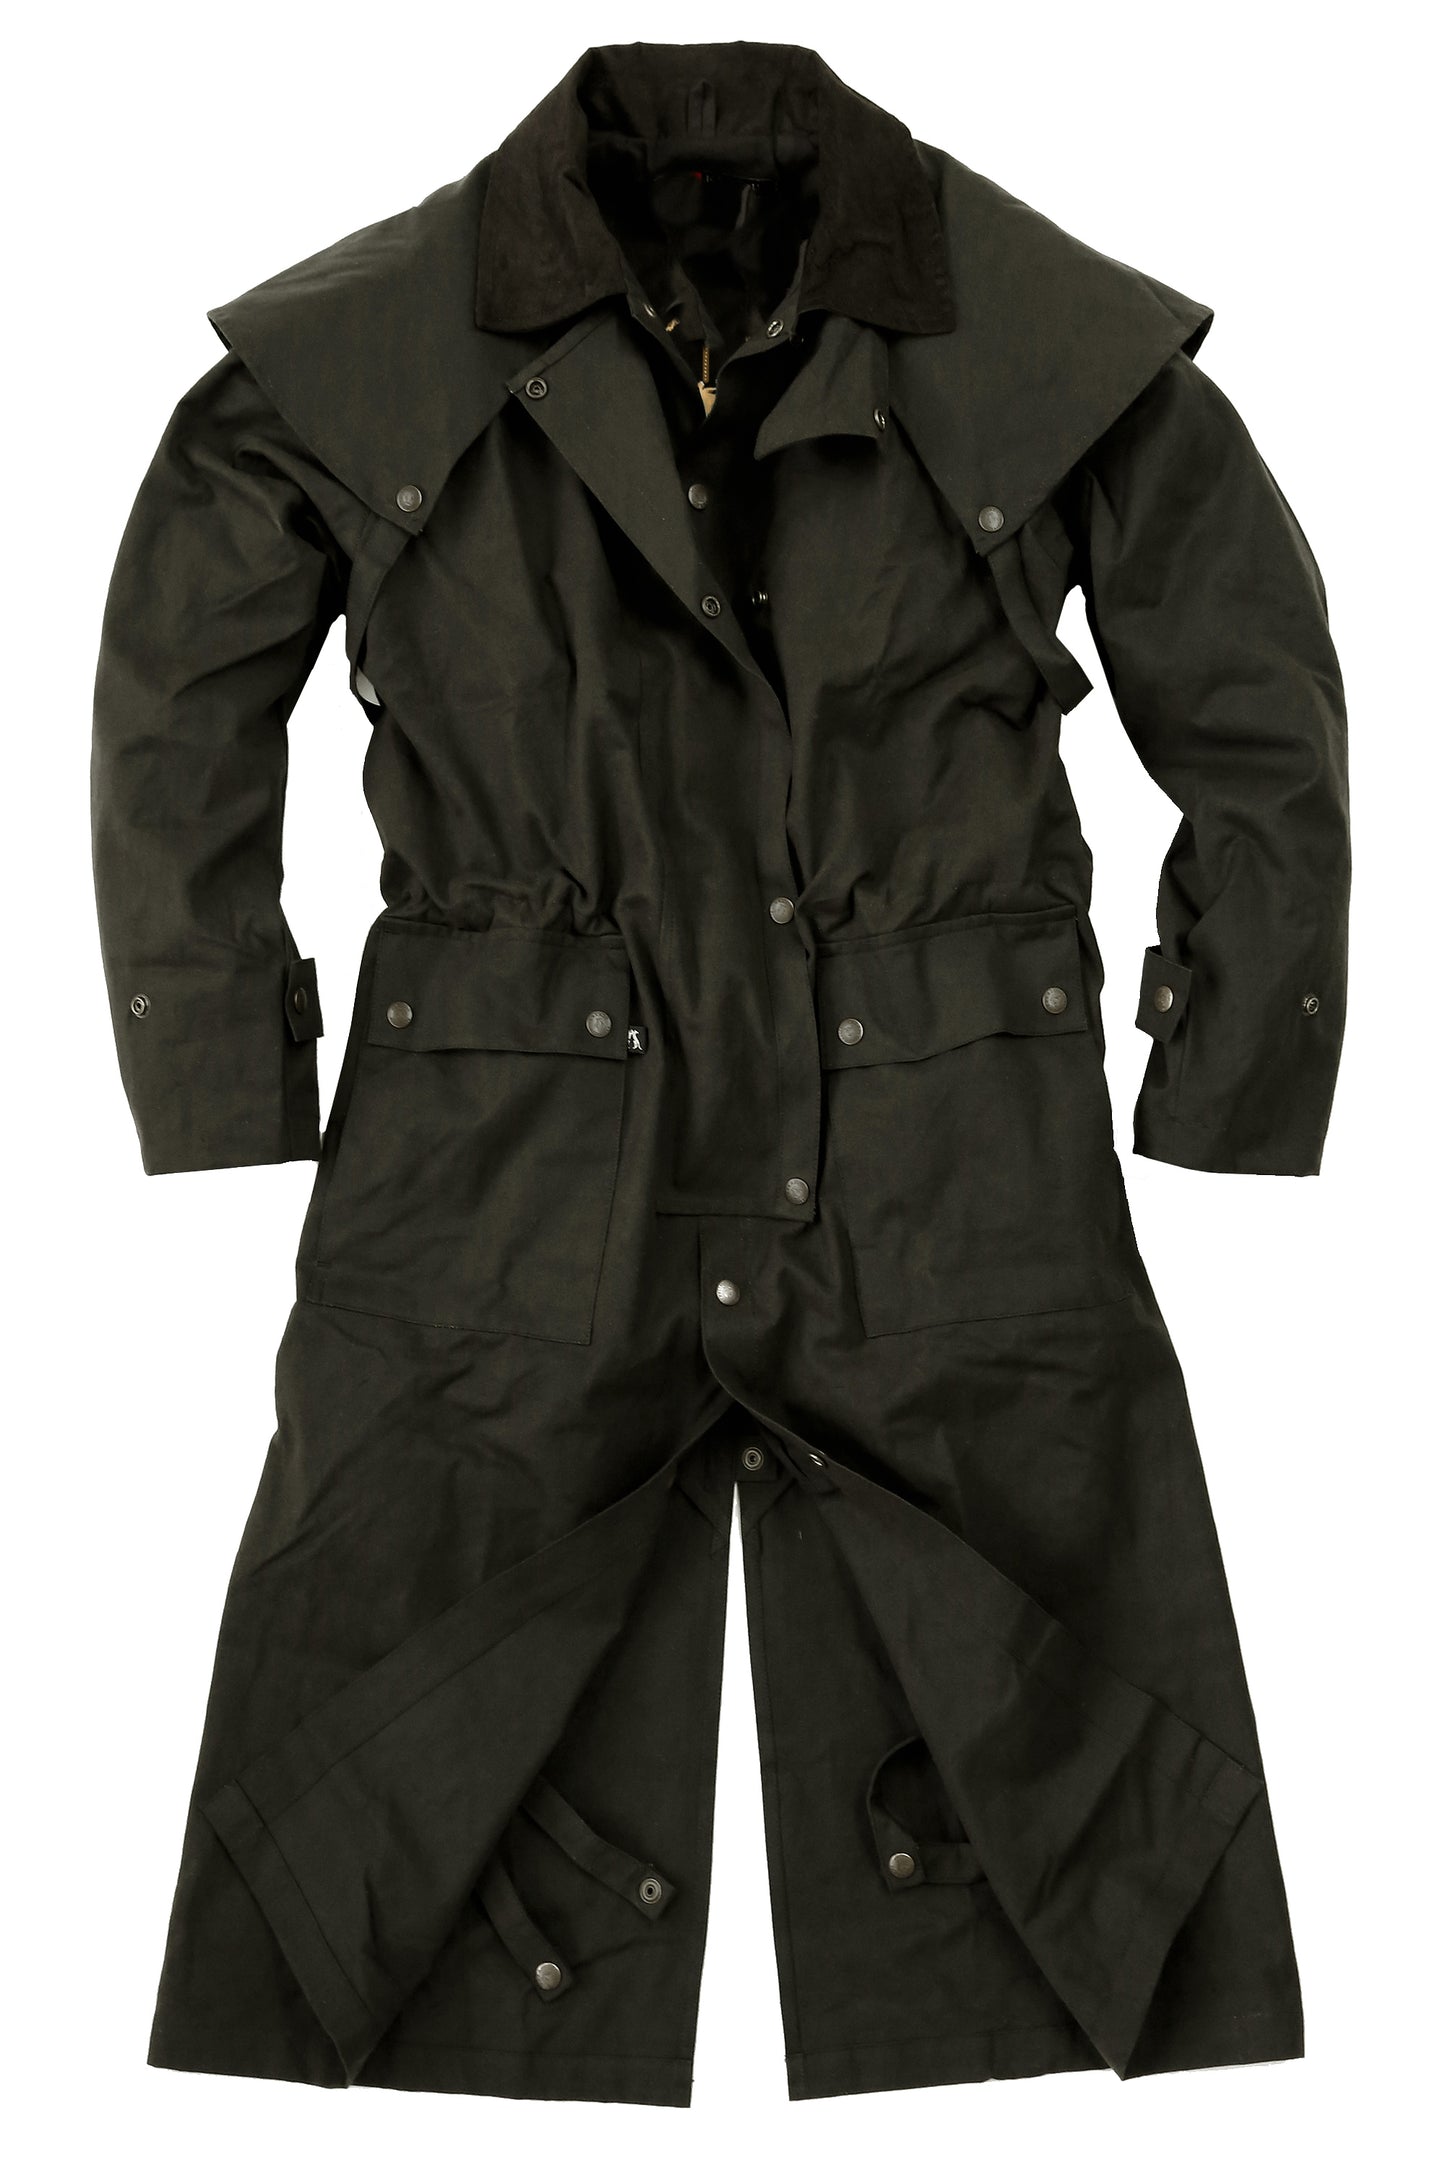 Ölzeug Mantel mit herausnehmbaren Winter Innenfutter in schwarz & braun